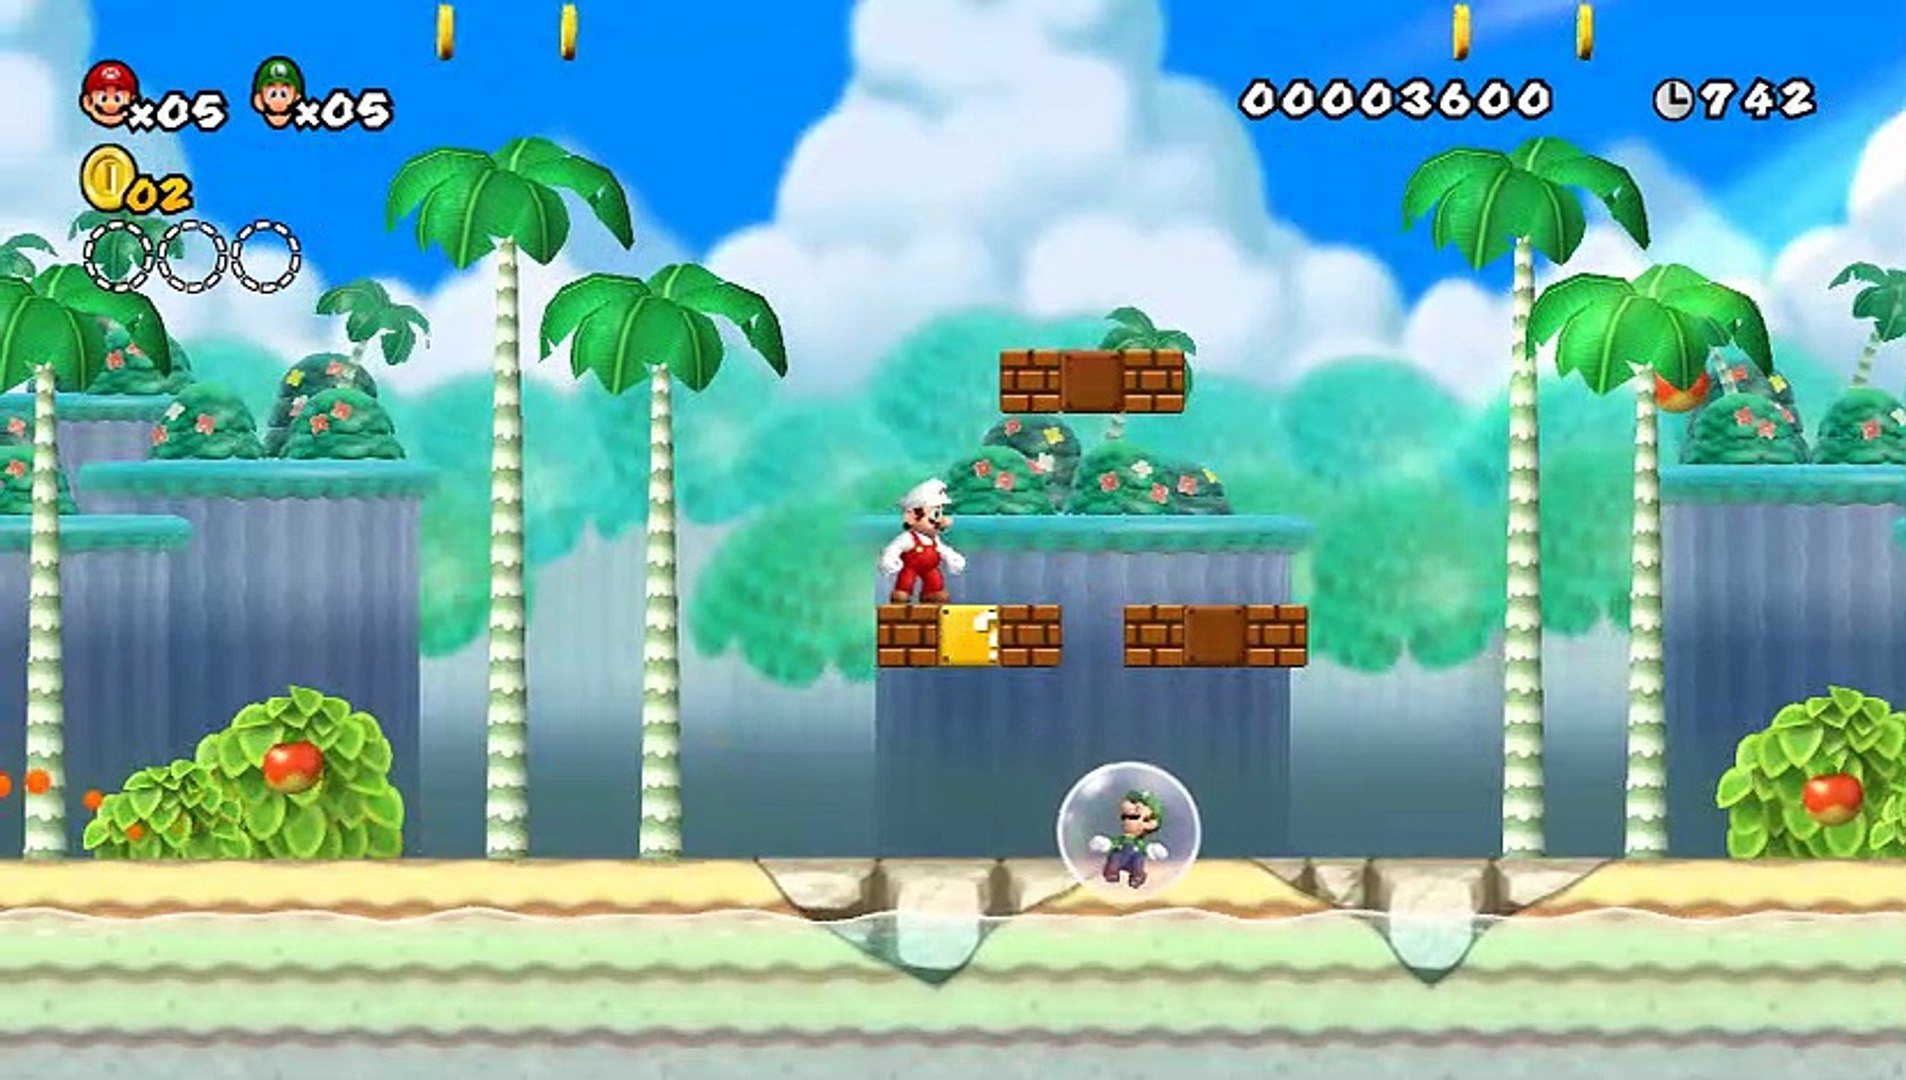 Newer Super Mario Bros. Wii online multiplayer - wii - Vidéo Dailymotion